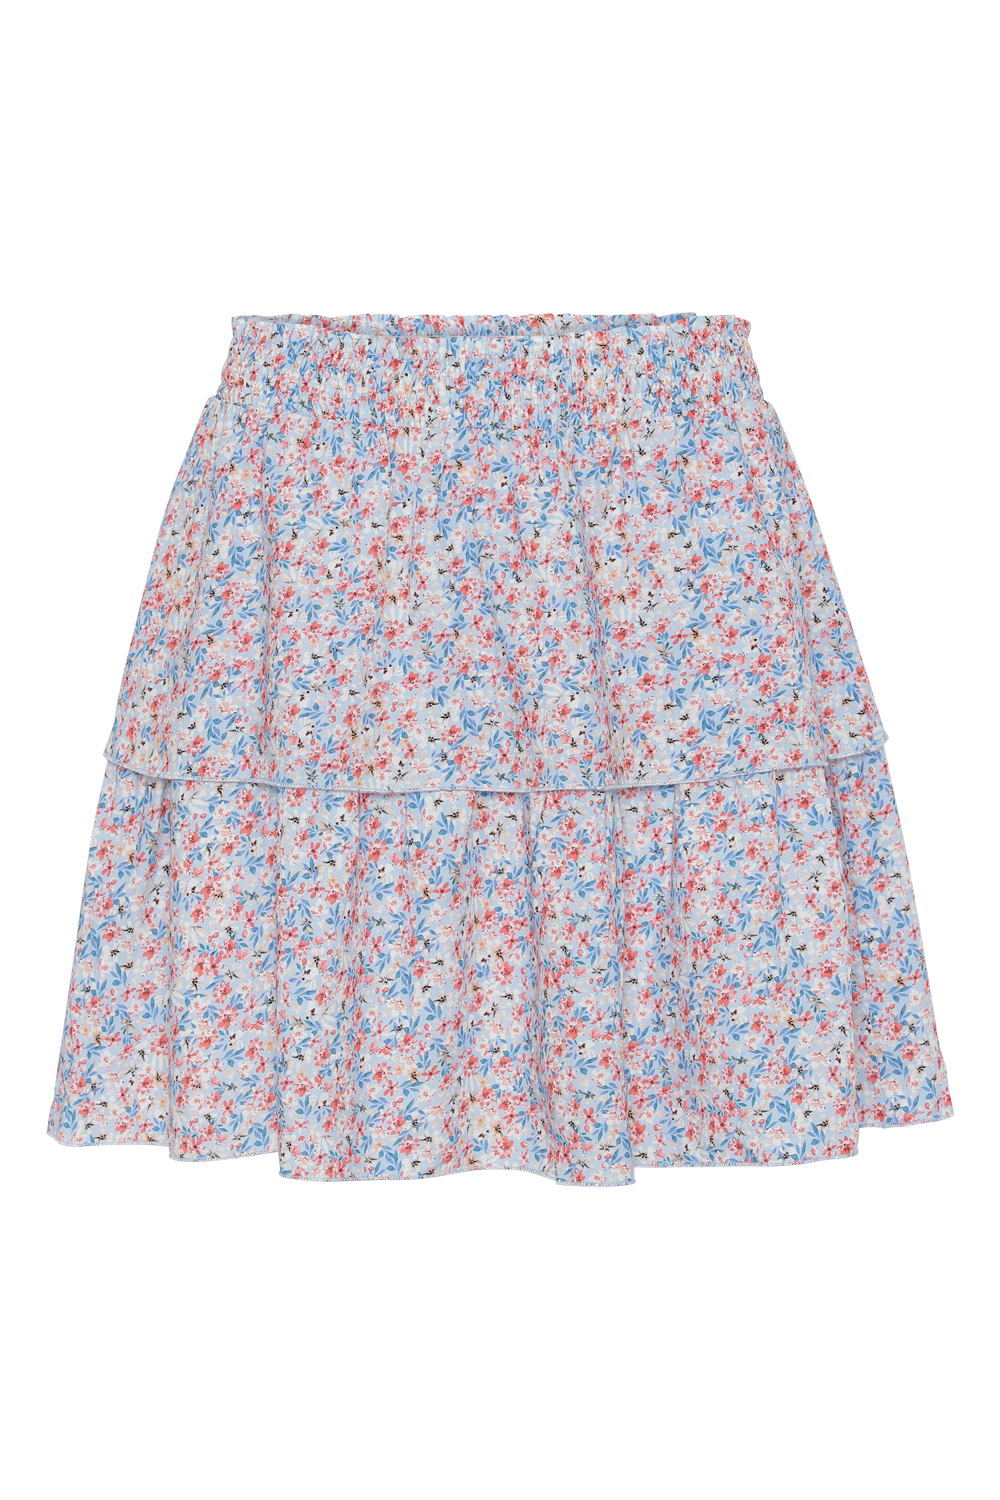 Sally Short Skirt Blue Multiflower